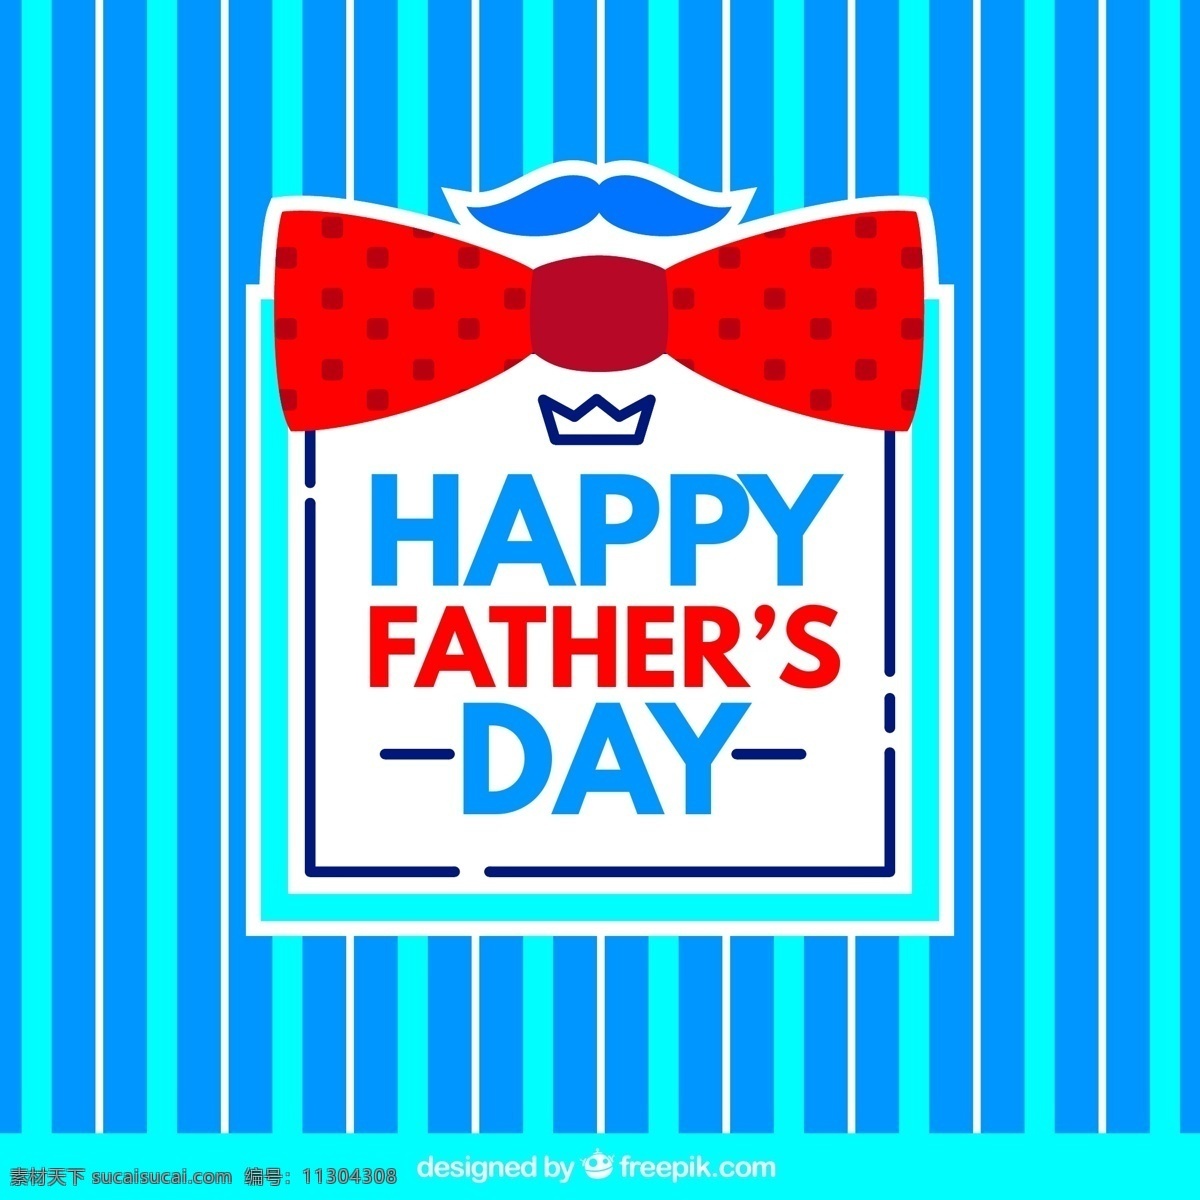 蓝 条 背景 父亲节 贺卡 矢量 领结 条纹 happy fathers day 矢量图